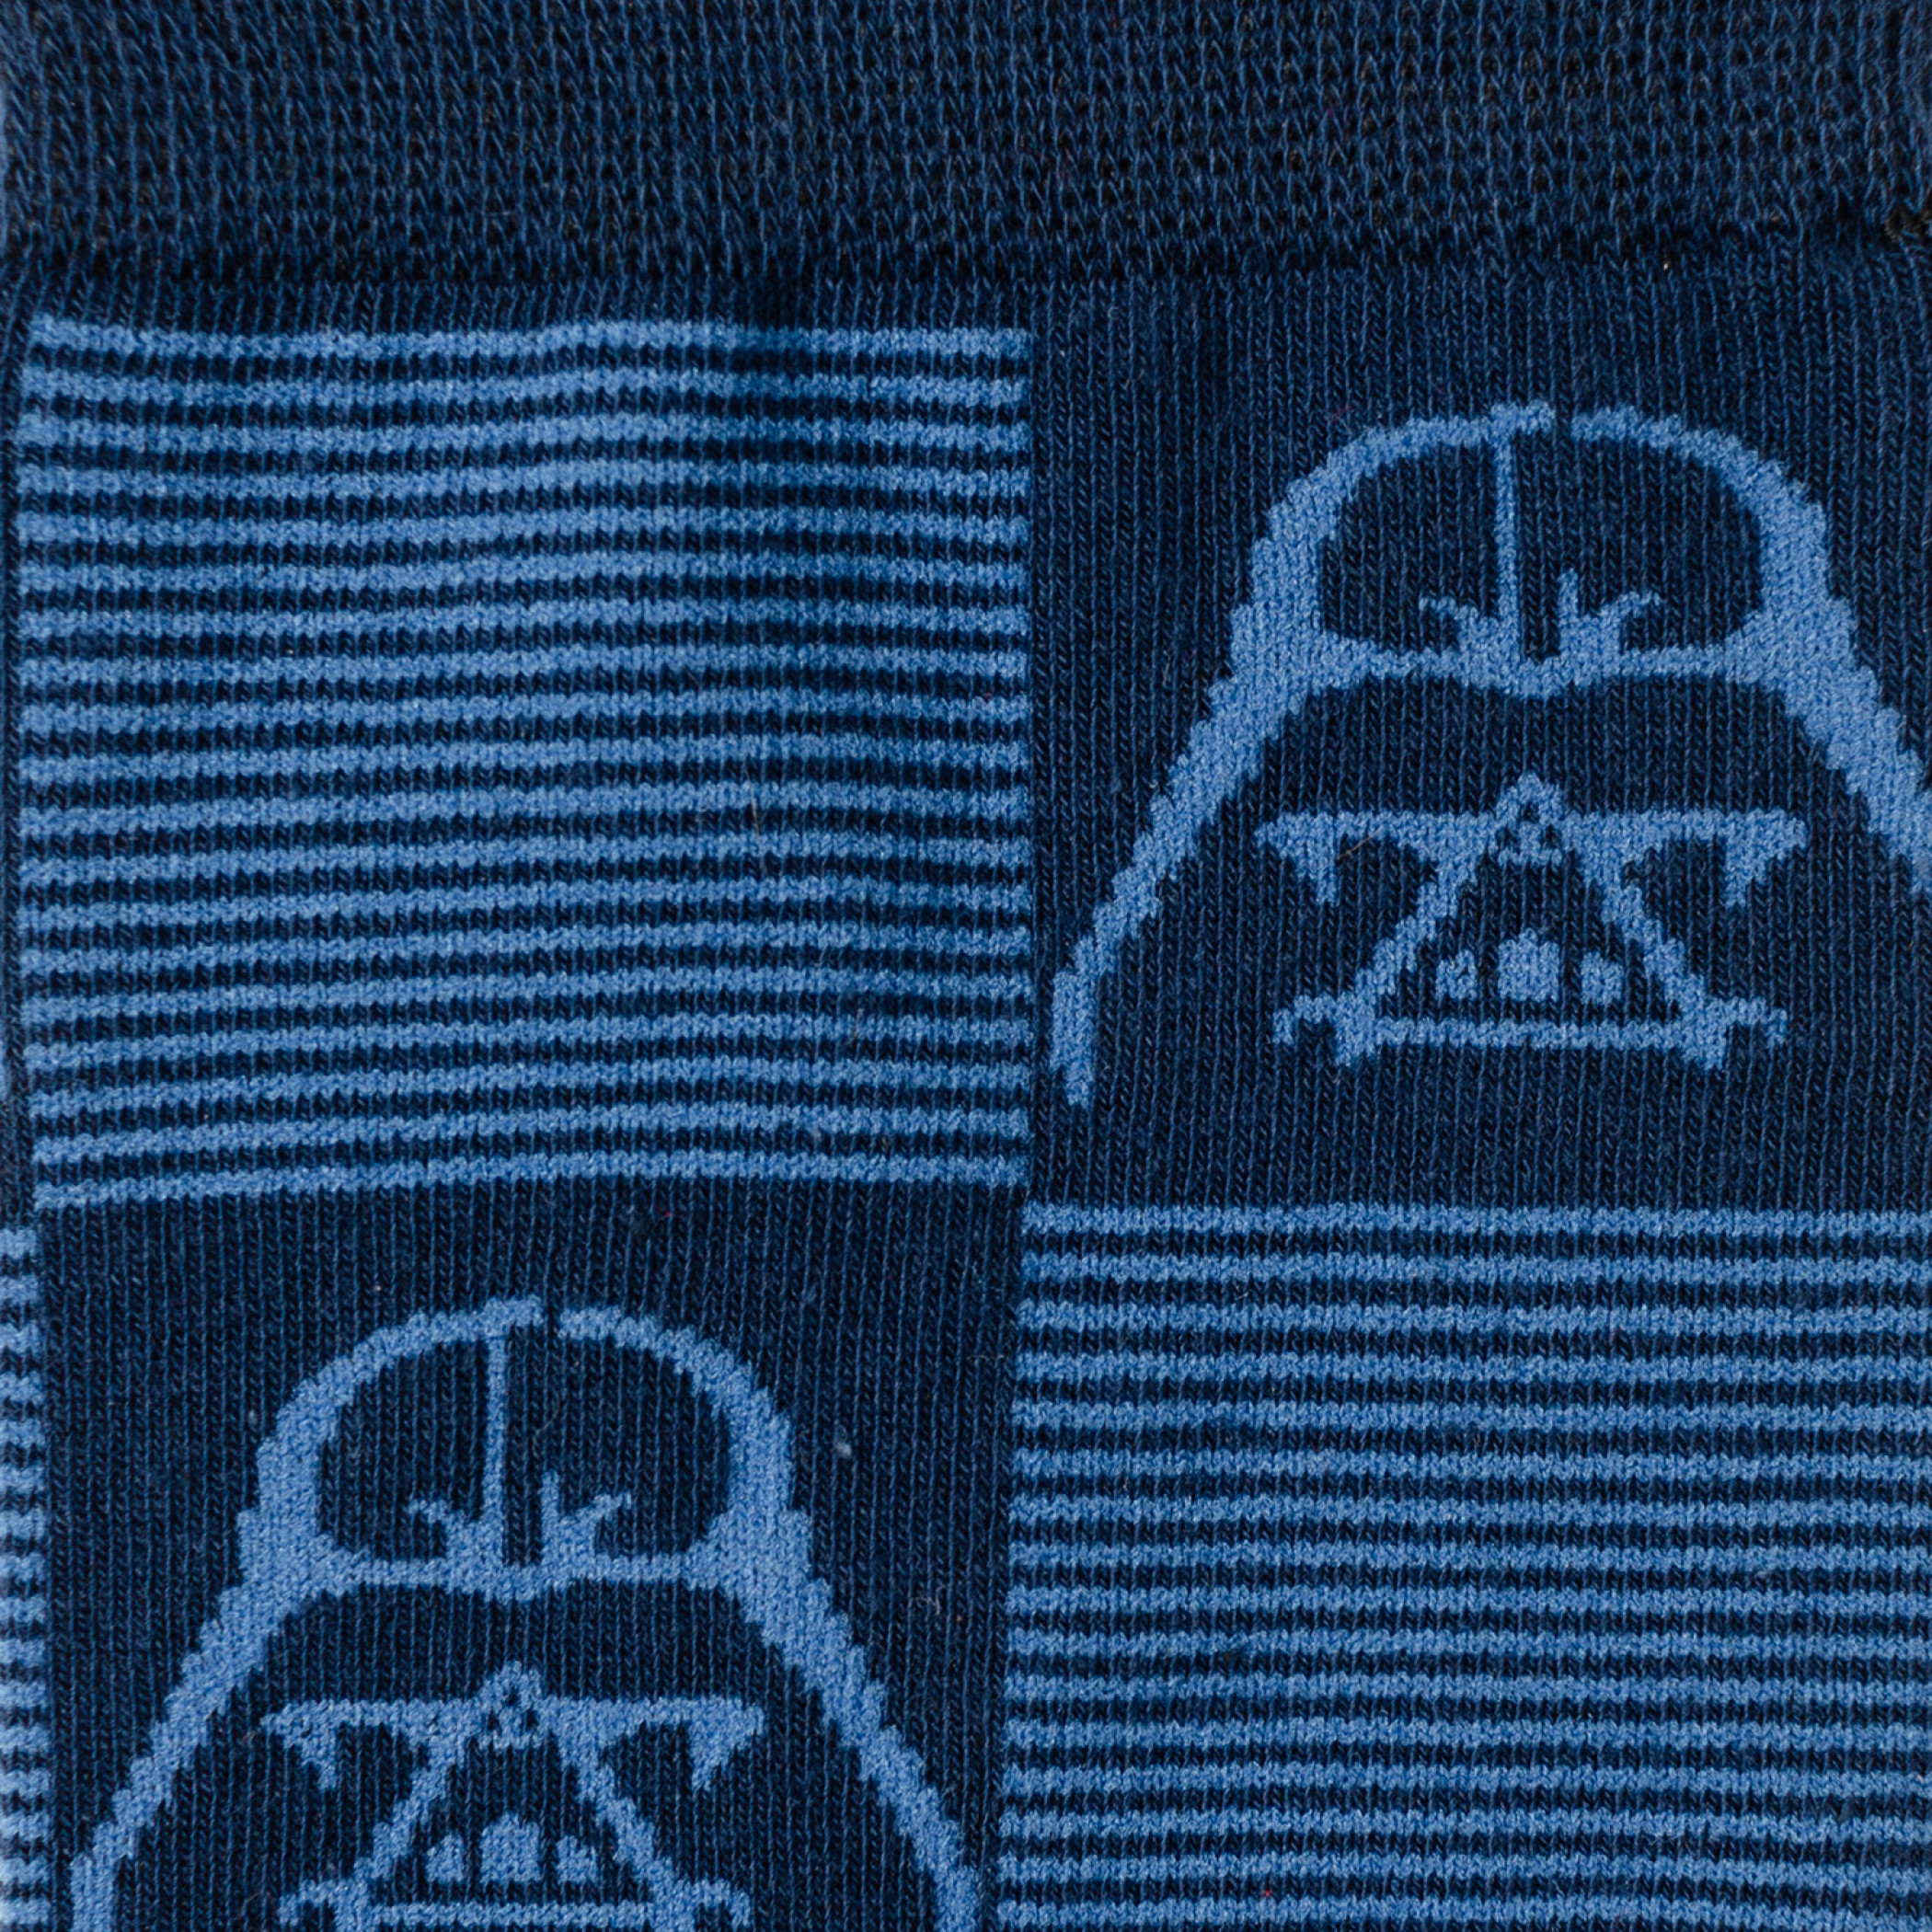 Star Wars Darth Vader Checkered Dress Socks